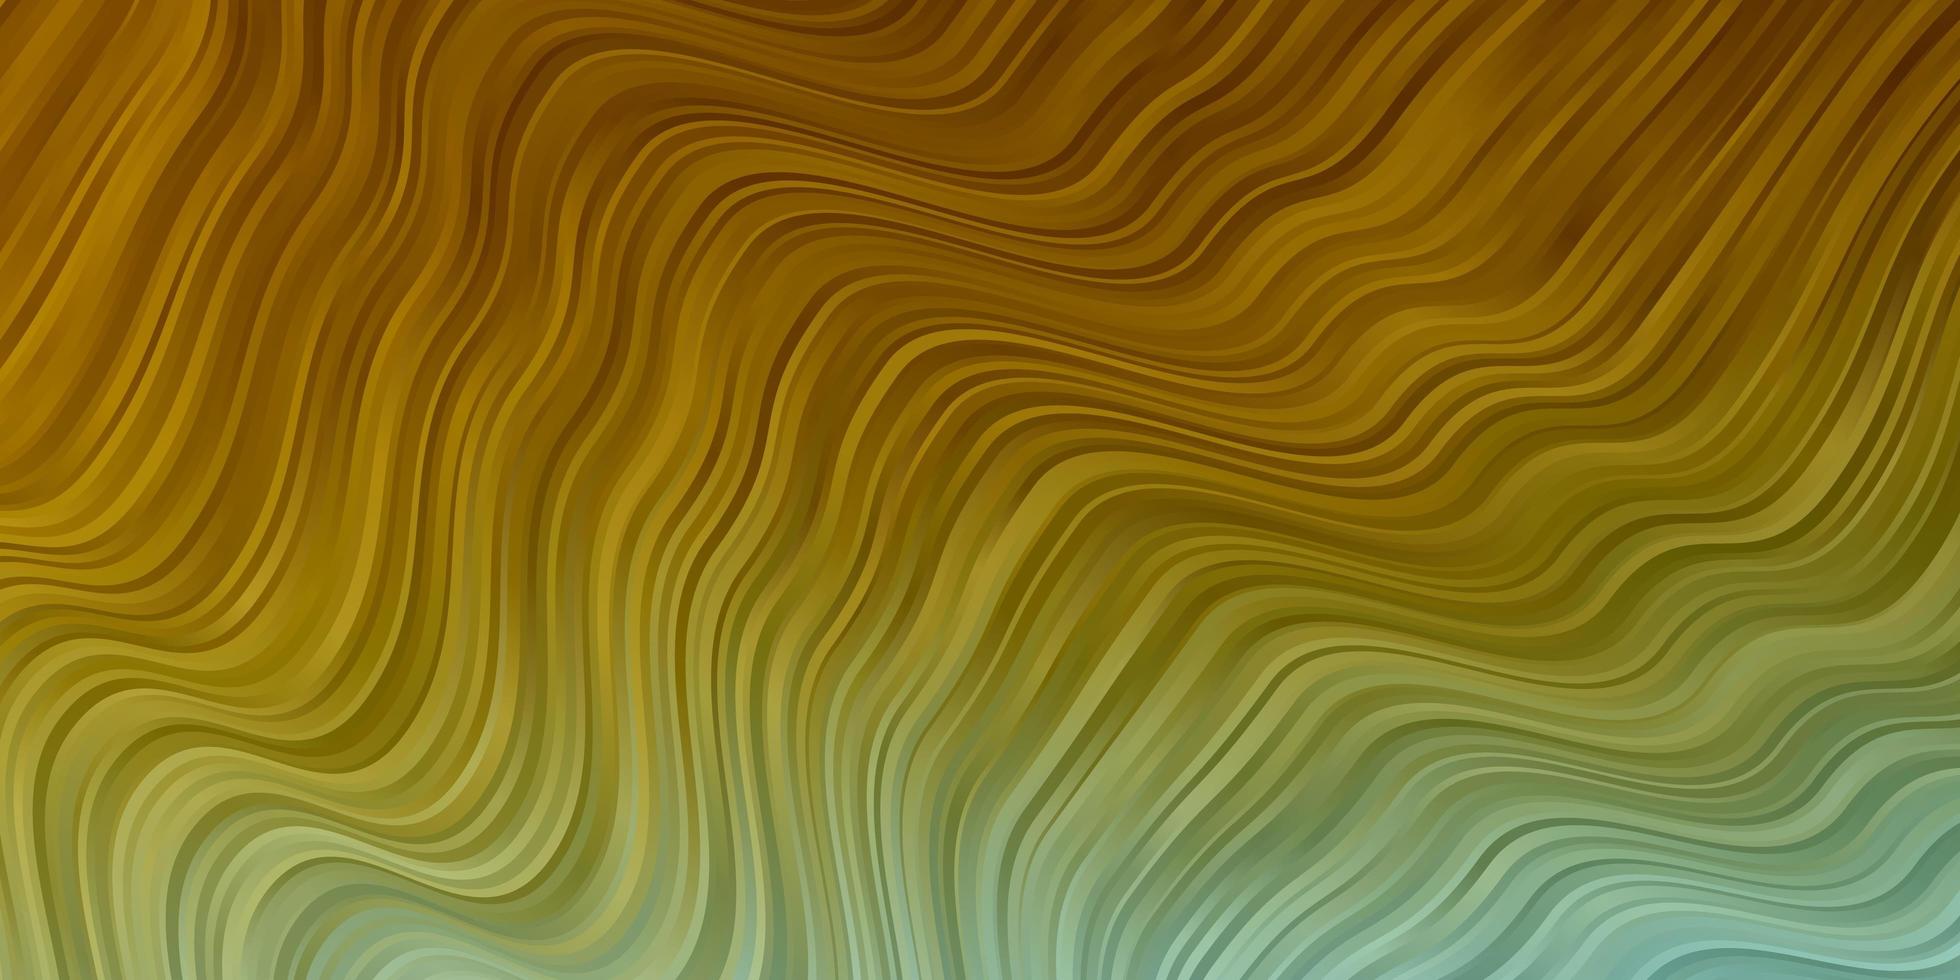 hellblauer, gelber Vektorhintergrund mit gebogenen Linien. Illustration im abstrakten Stil mit Farbverlauf gebogen. Muster für Websites, Zielseiten. vektor